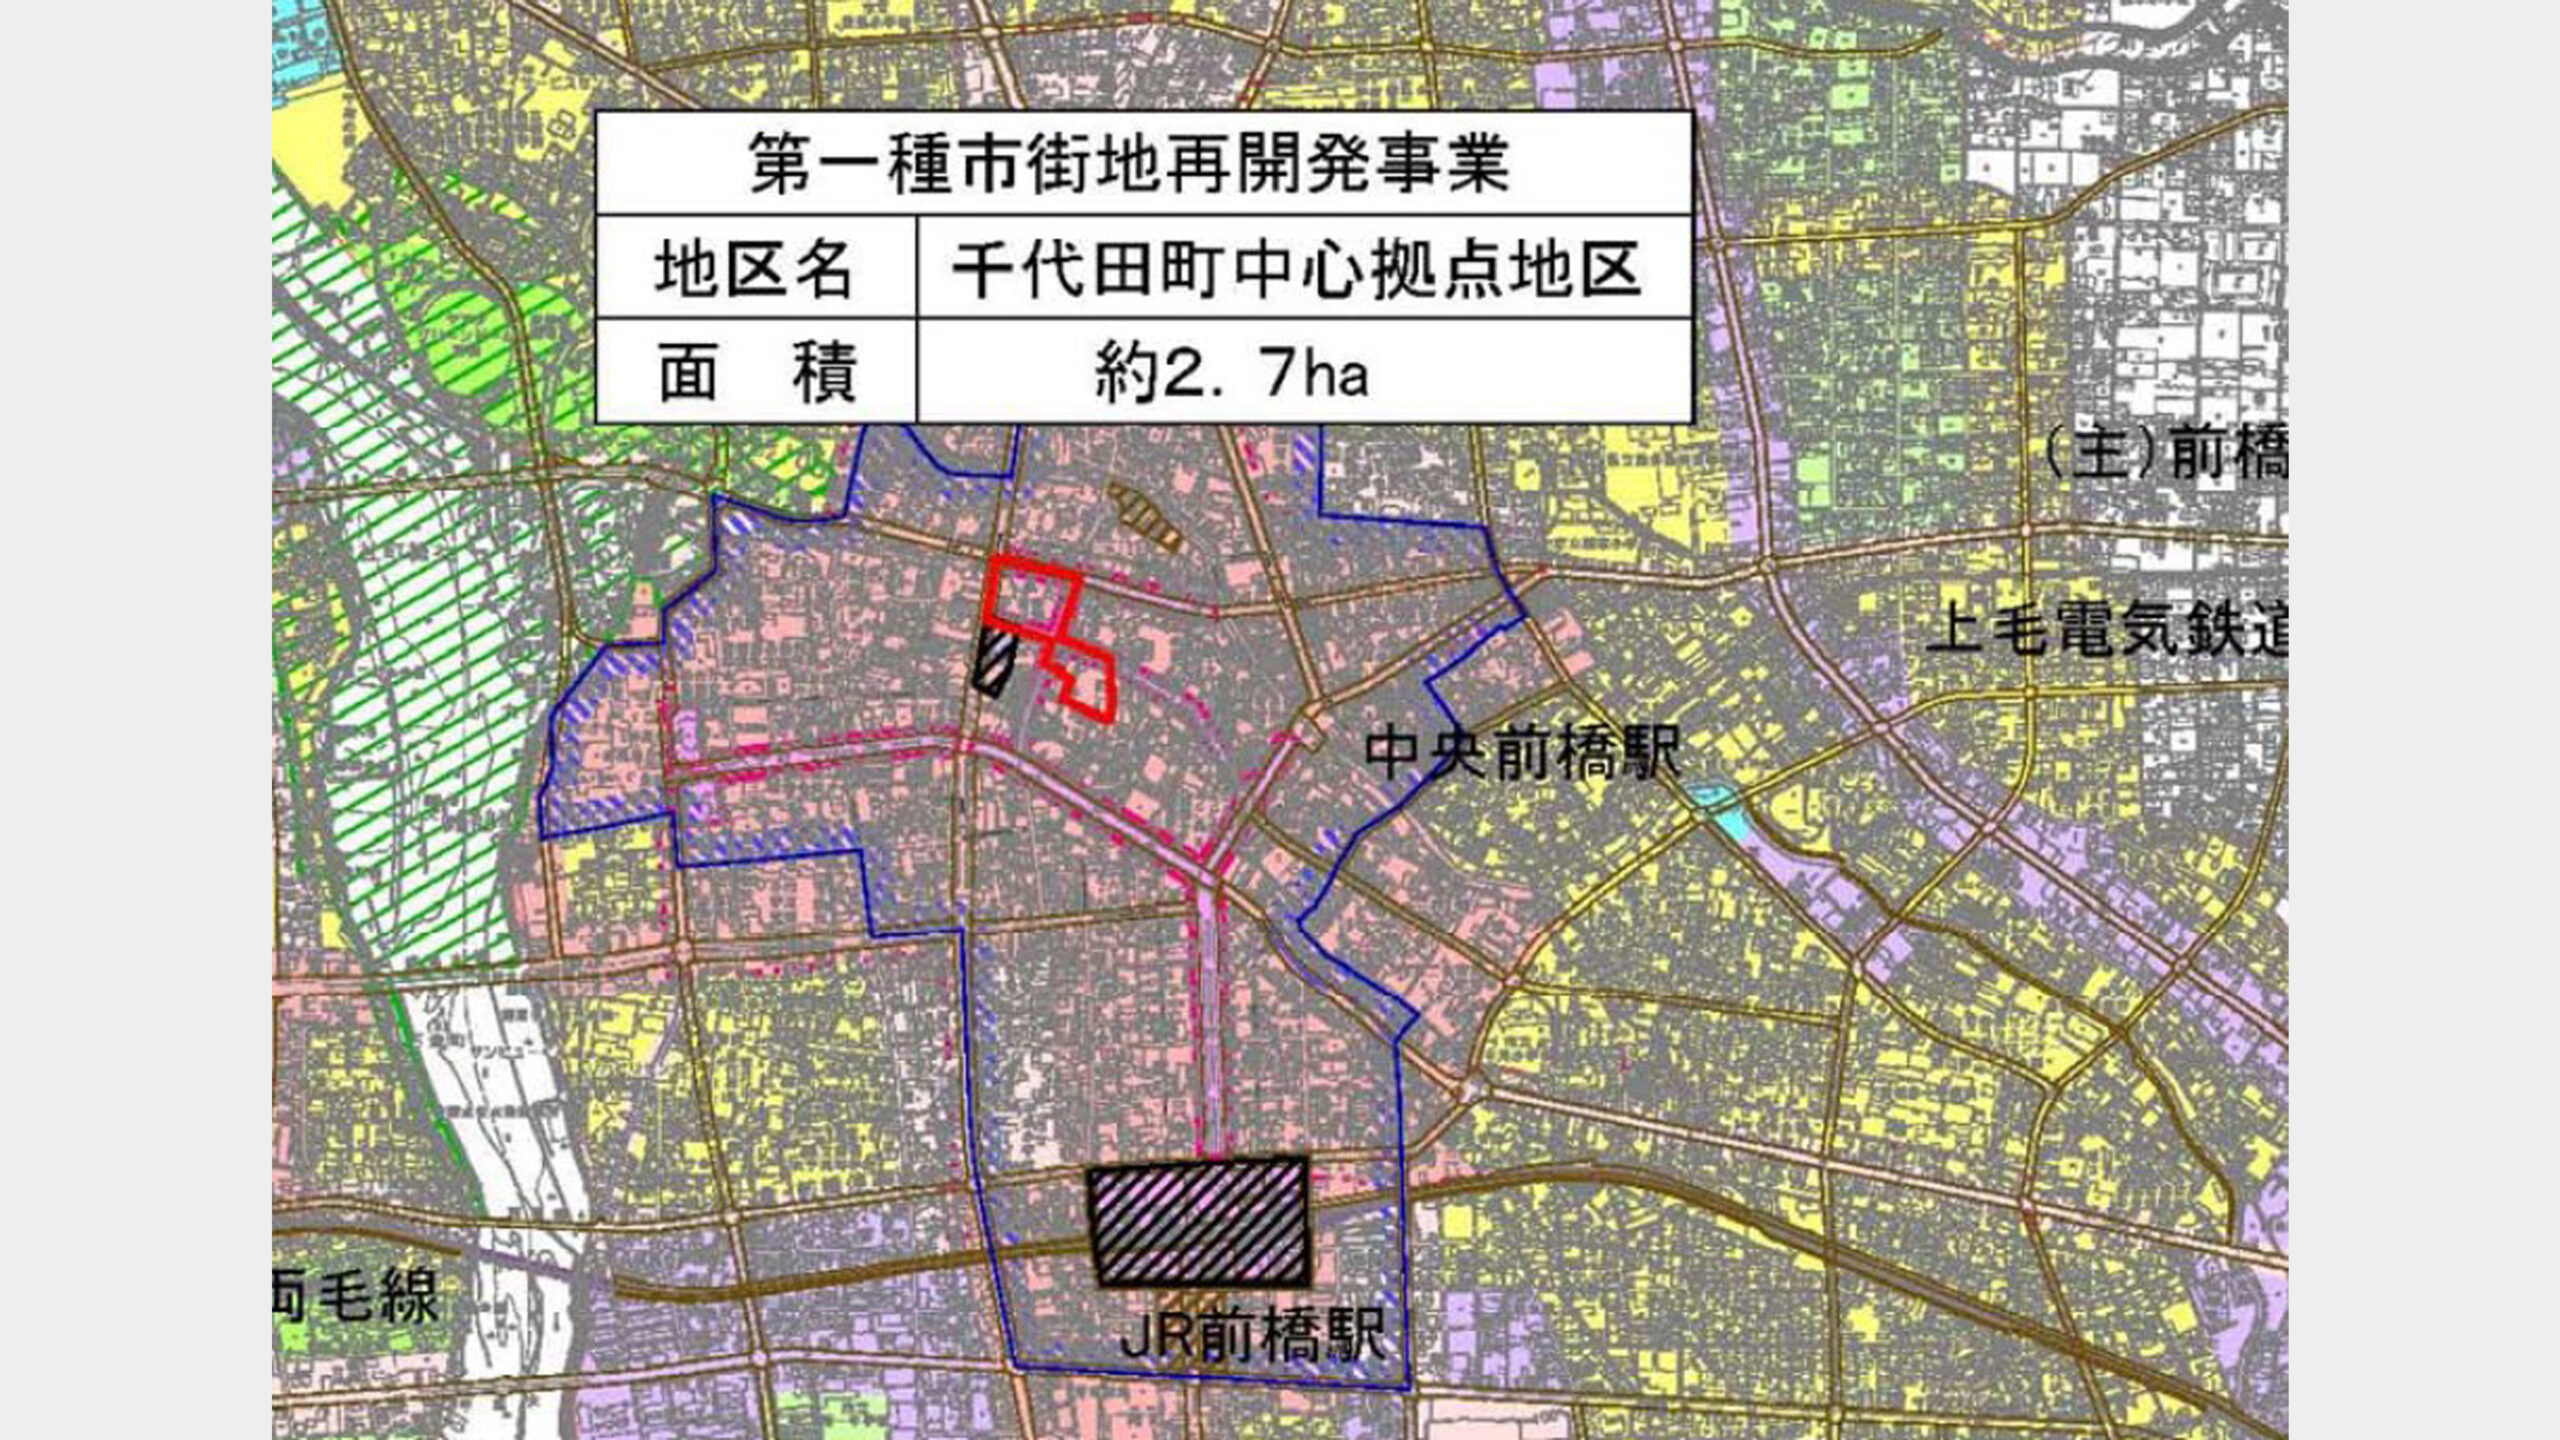 千代田町中心拠点地区市街地再開発事業都市計画決定